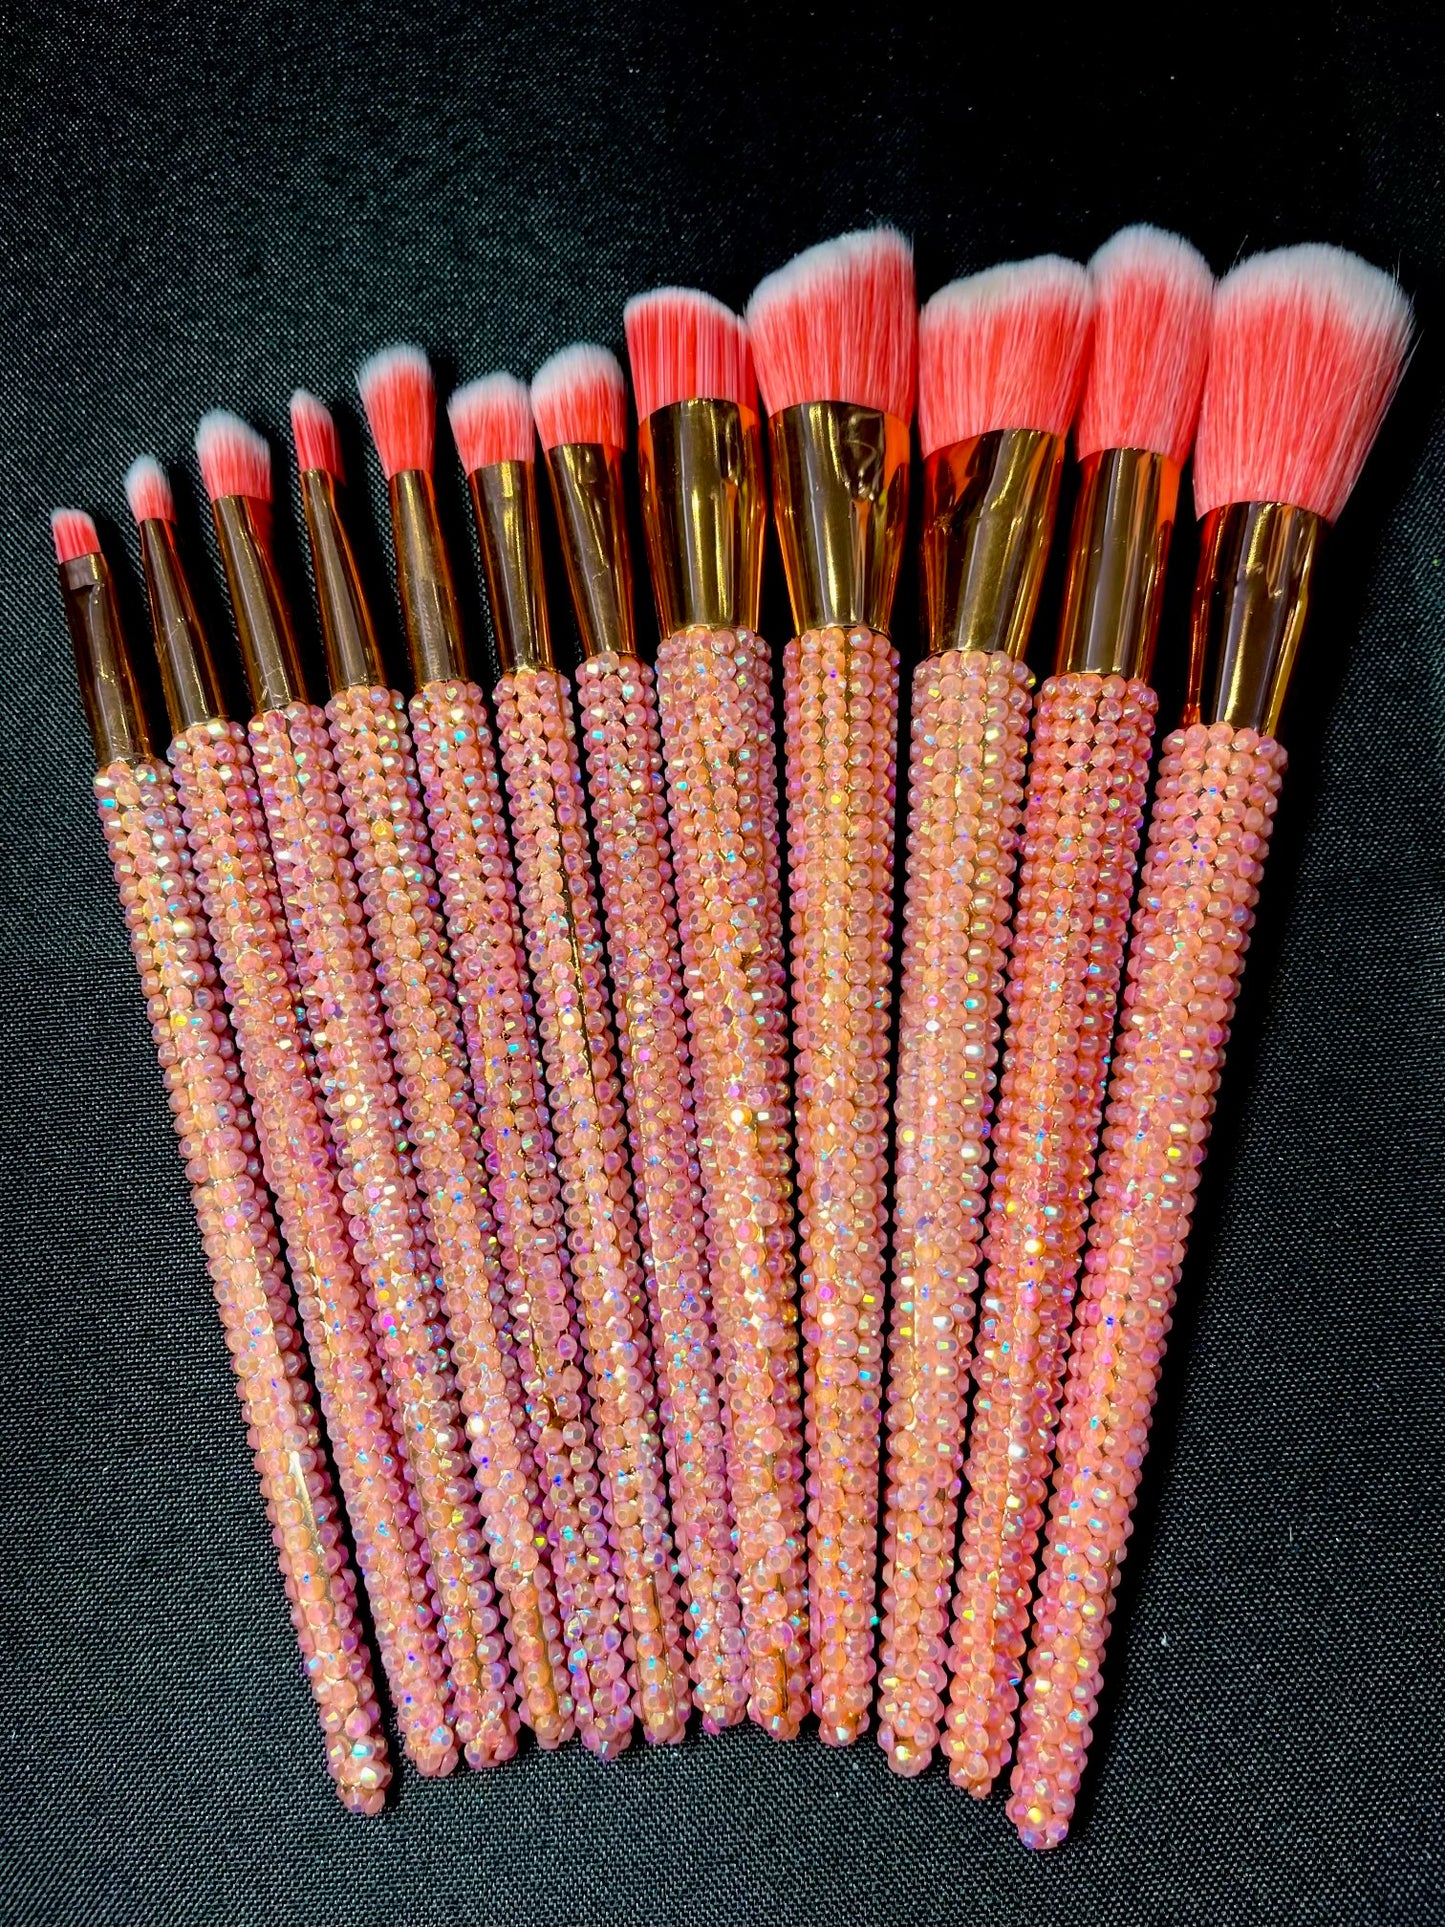 Bling Bling 12 piece brush set pink